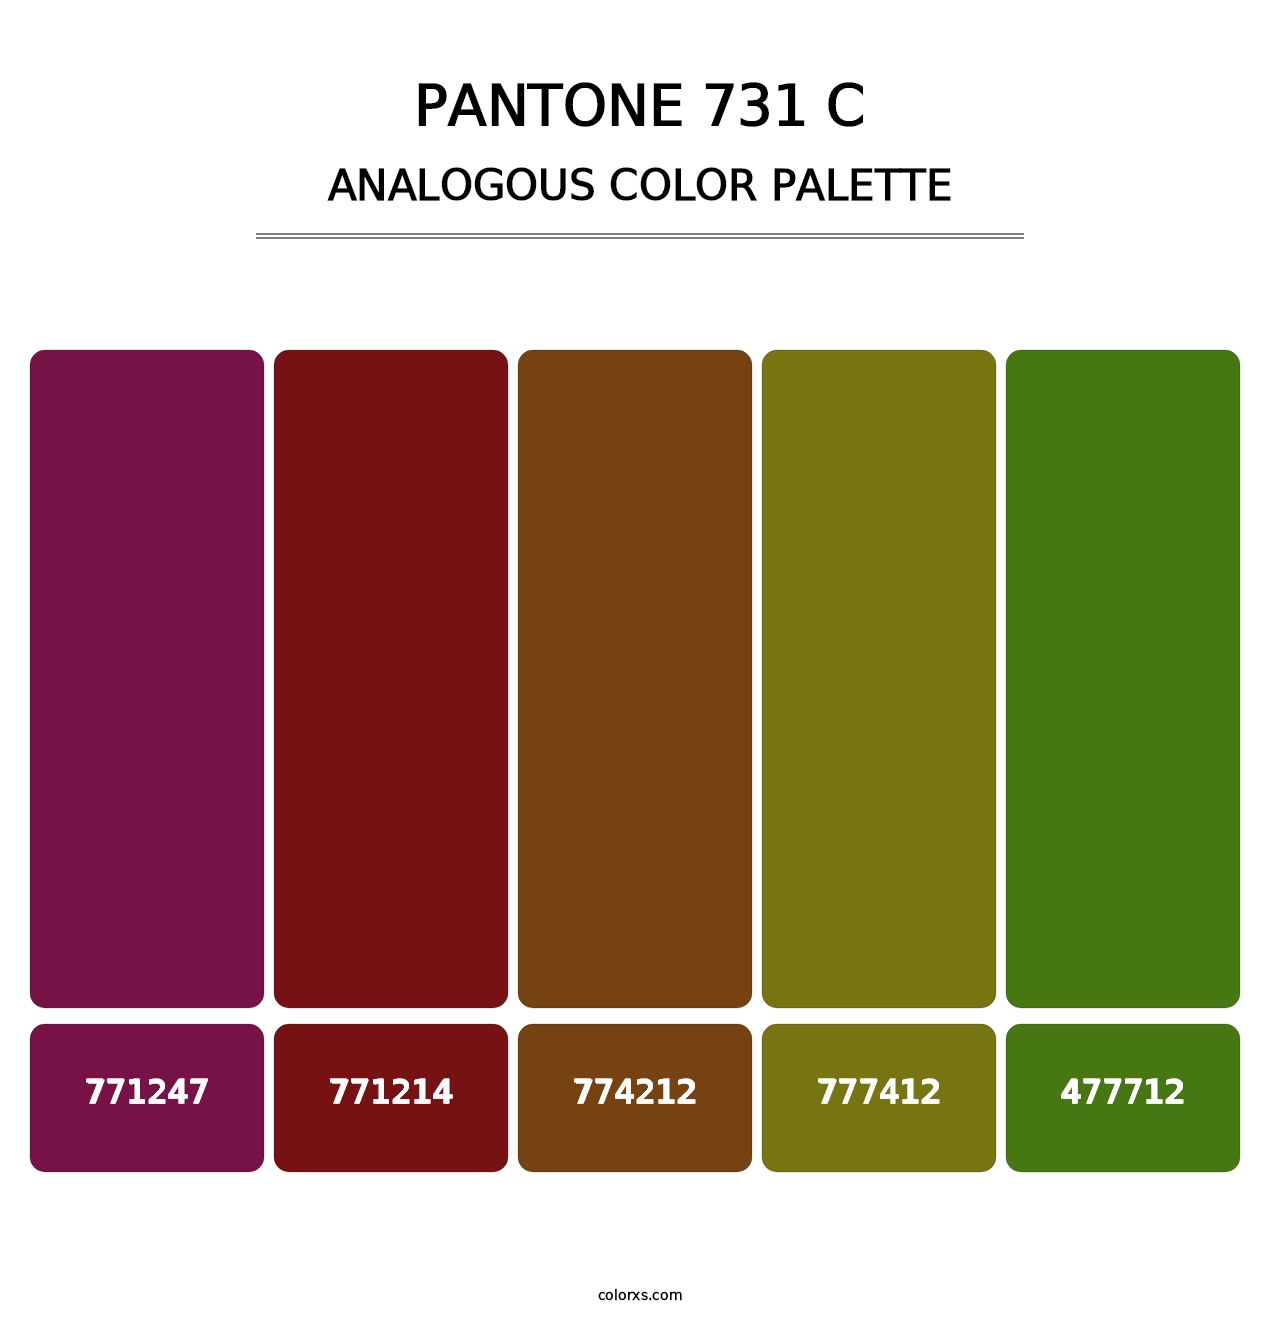 PANTONE 731 C - Analogous Color Palette